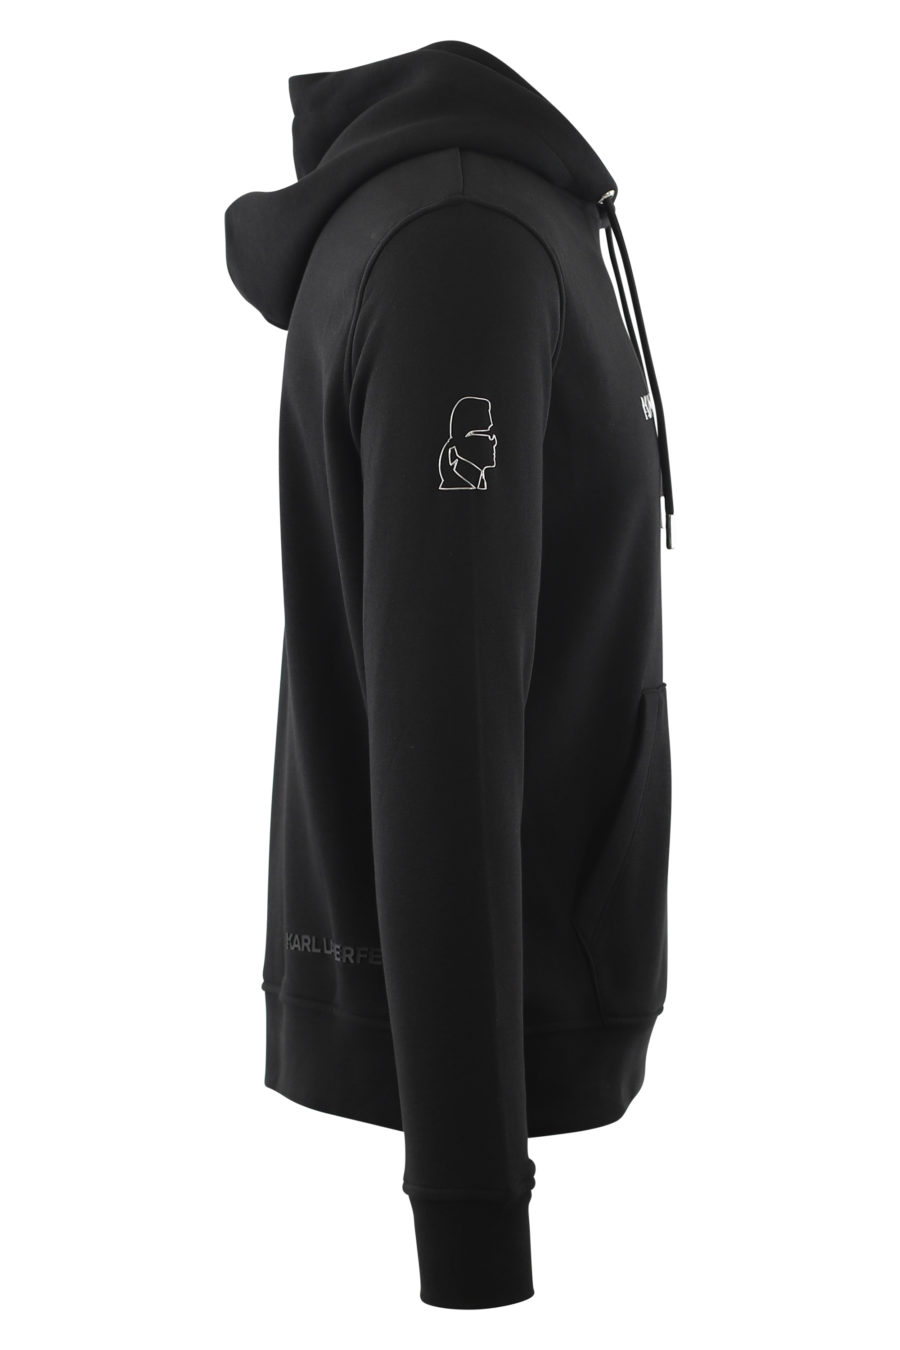 Sudadera negra con capucha y logo plateado en relieve - IMG 6570